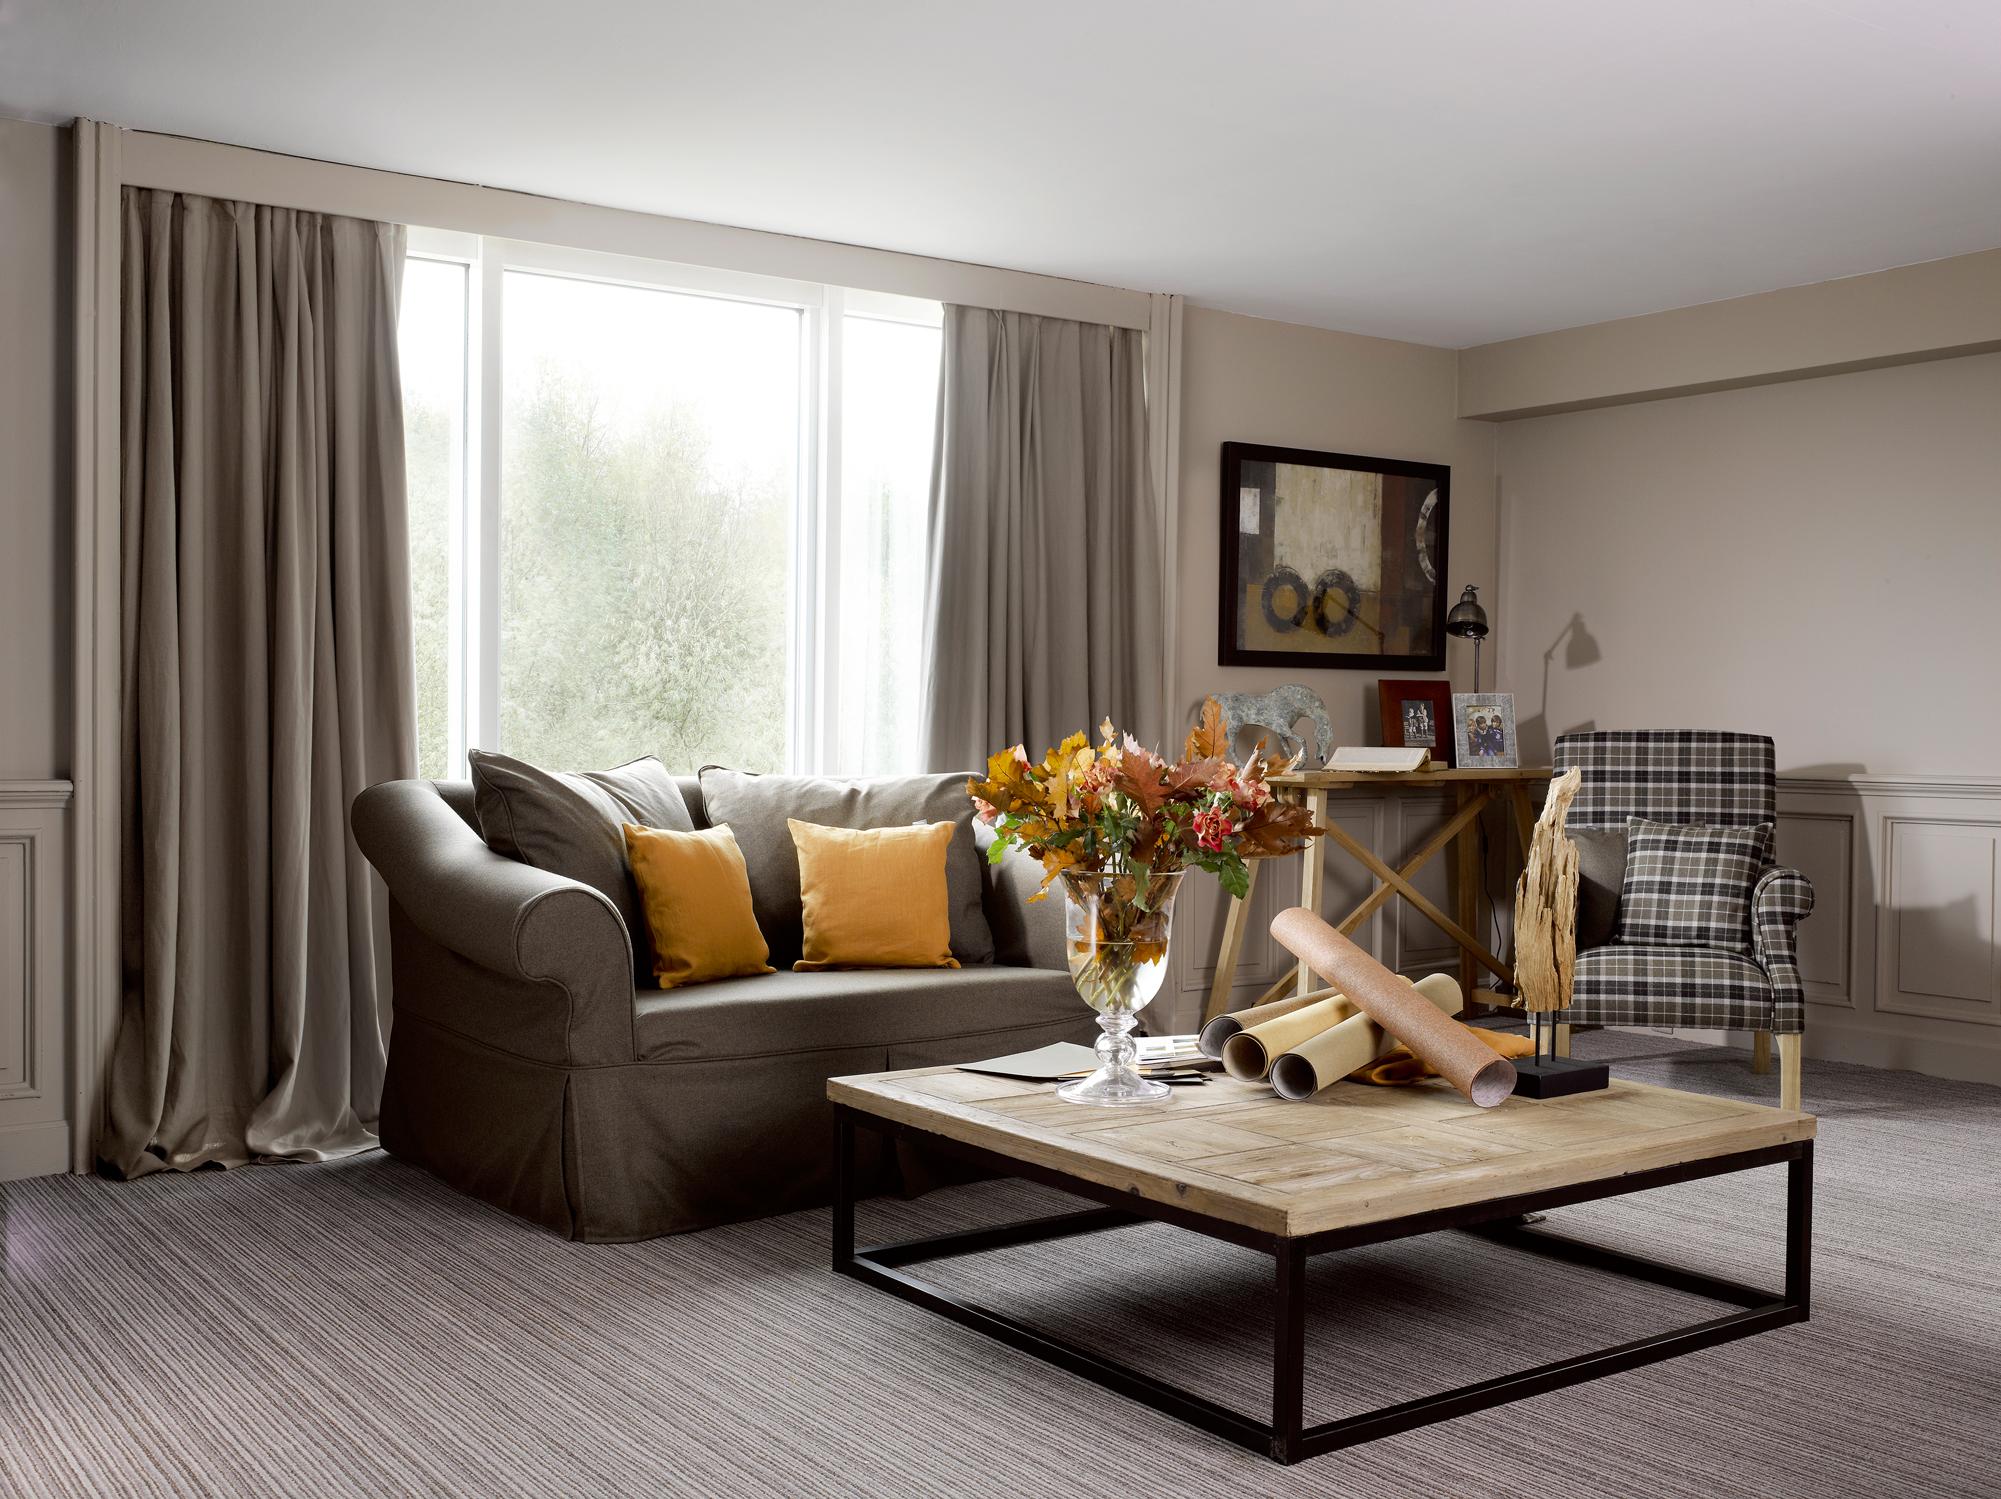 Wohnzimmer mit natürlichen Farbtönen gestalten #couchtisch #teppich #sessel #vorhang #wandspiegel #zimmergestaltung ©Flamant